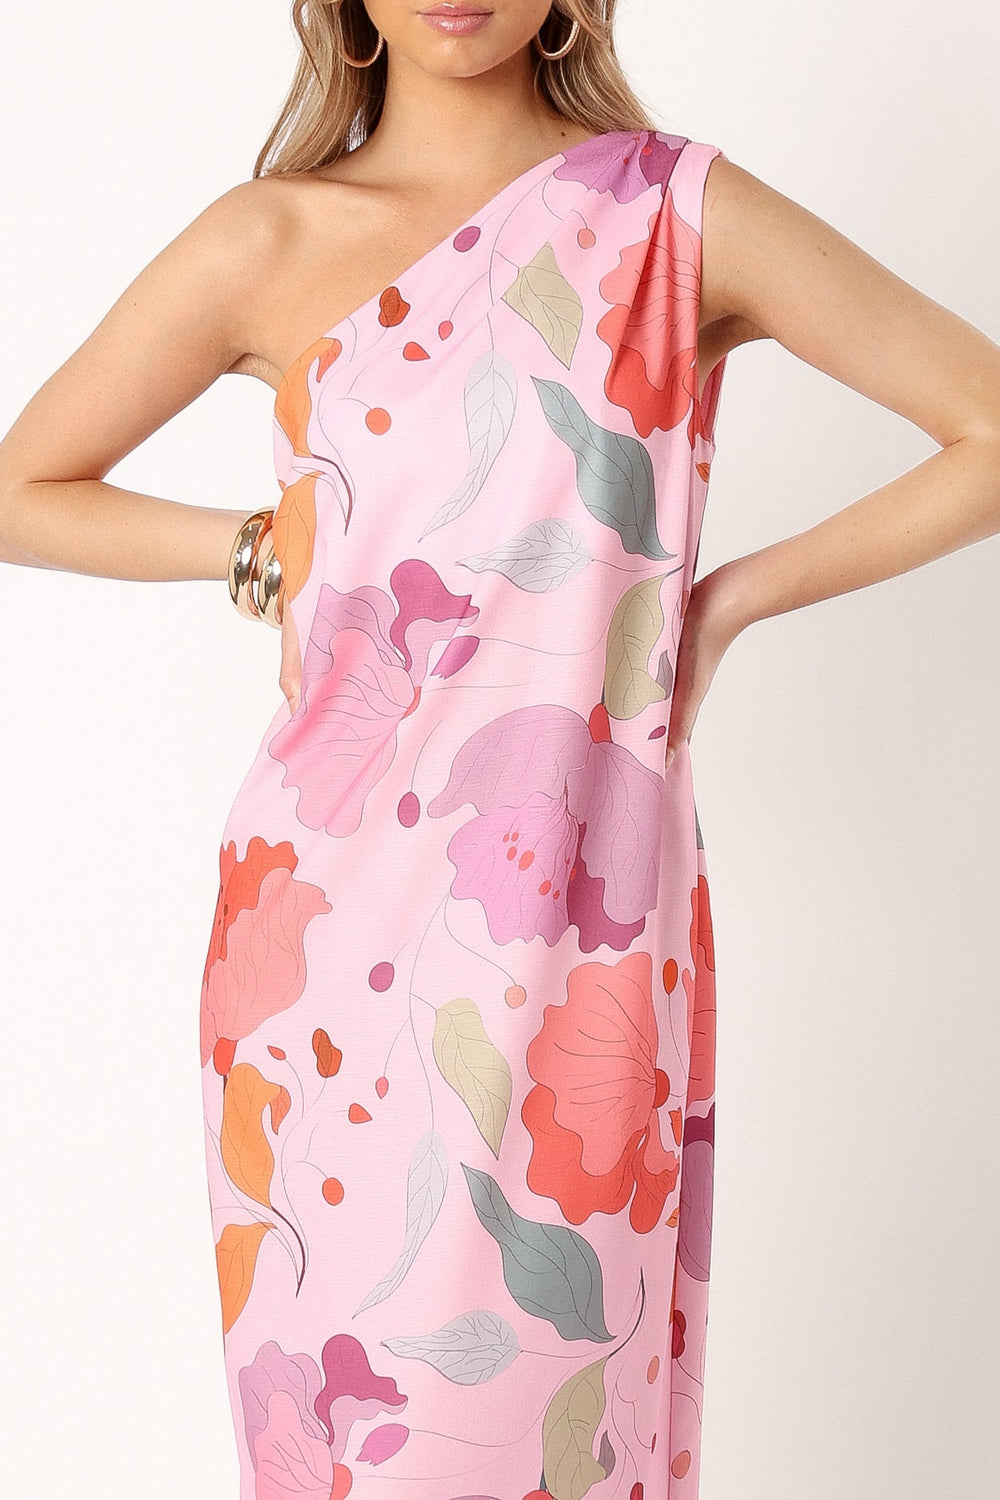 DRESSES @Tillie One Shoulder Maxi Dress - Pink Floral